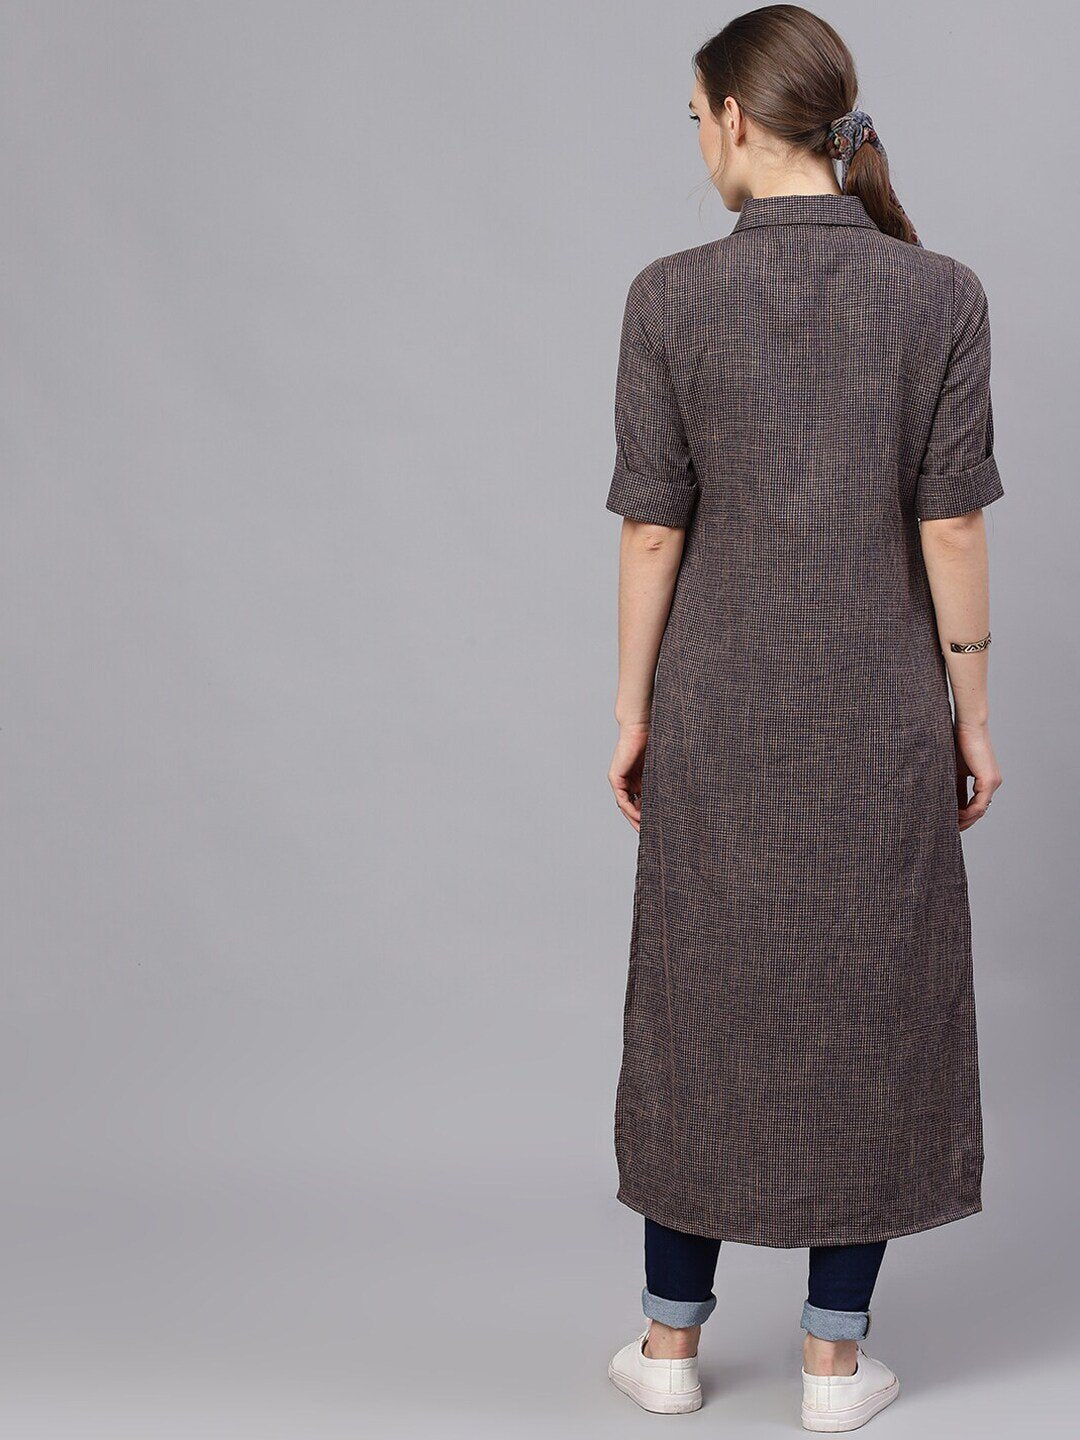 Women's  Blue & Grey Woven Design Pathani Kurta - AKS